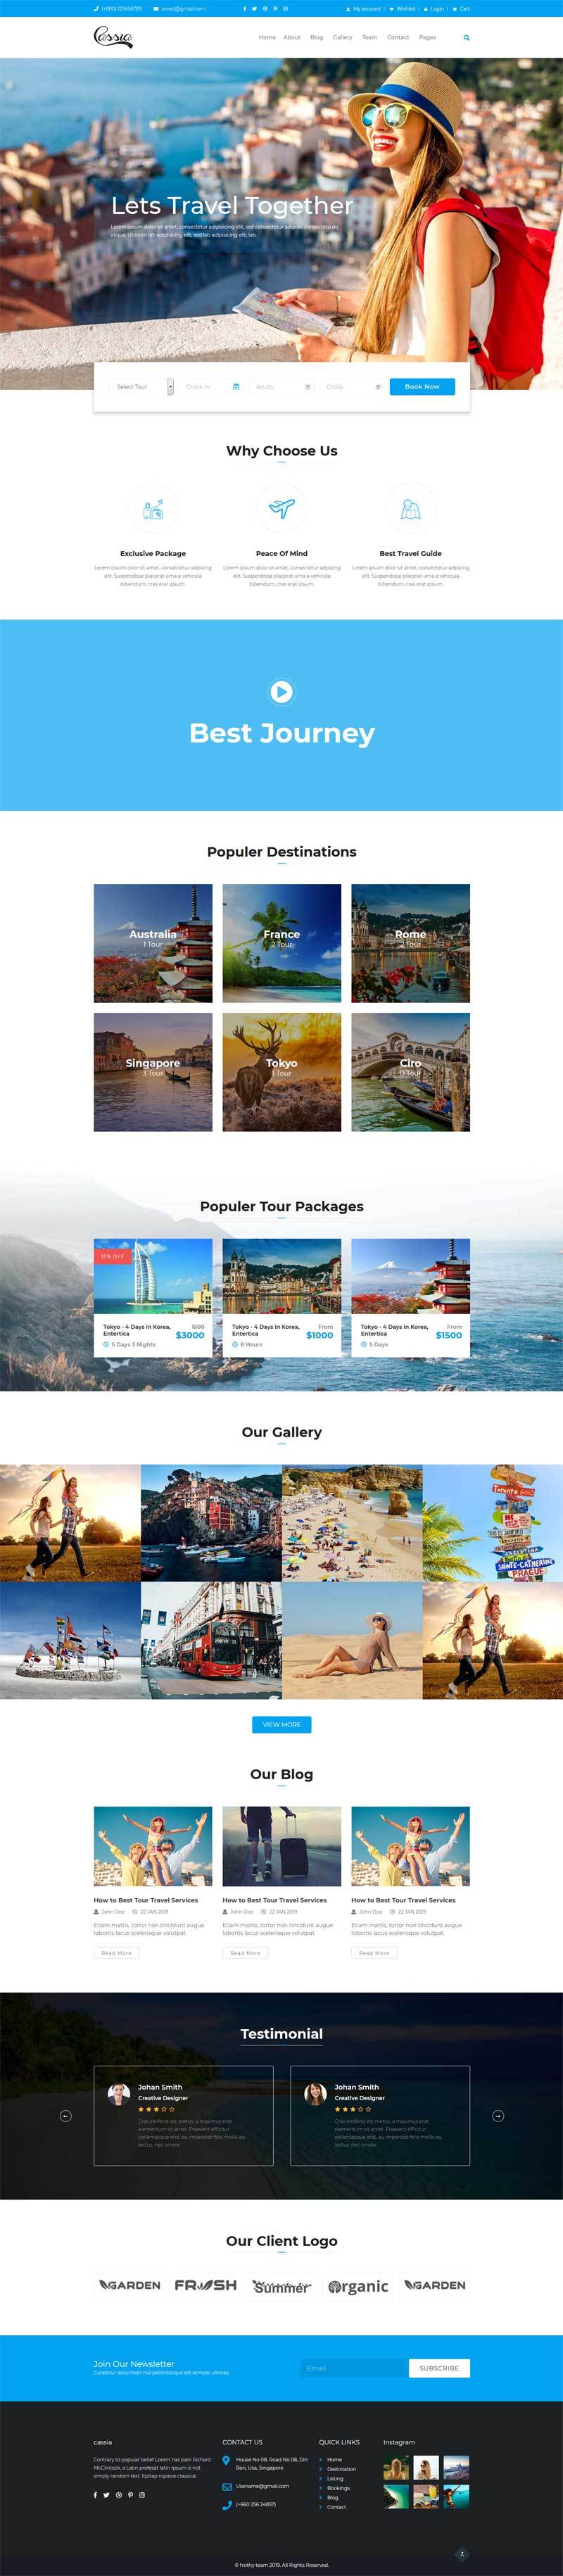 蓝色响应式设计旅行社组团网站Bootstrap模板6150